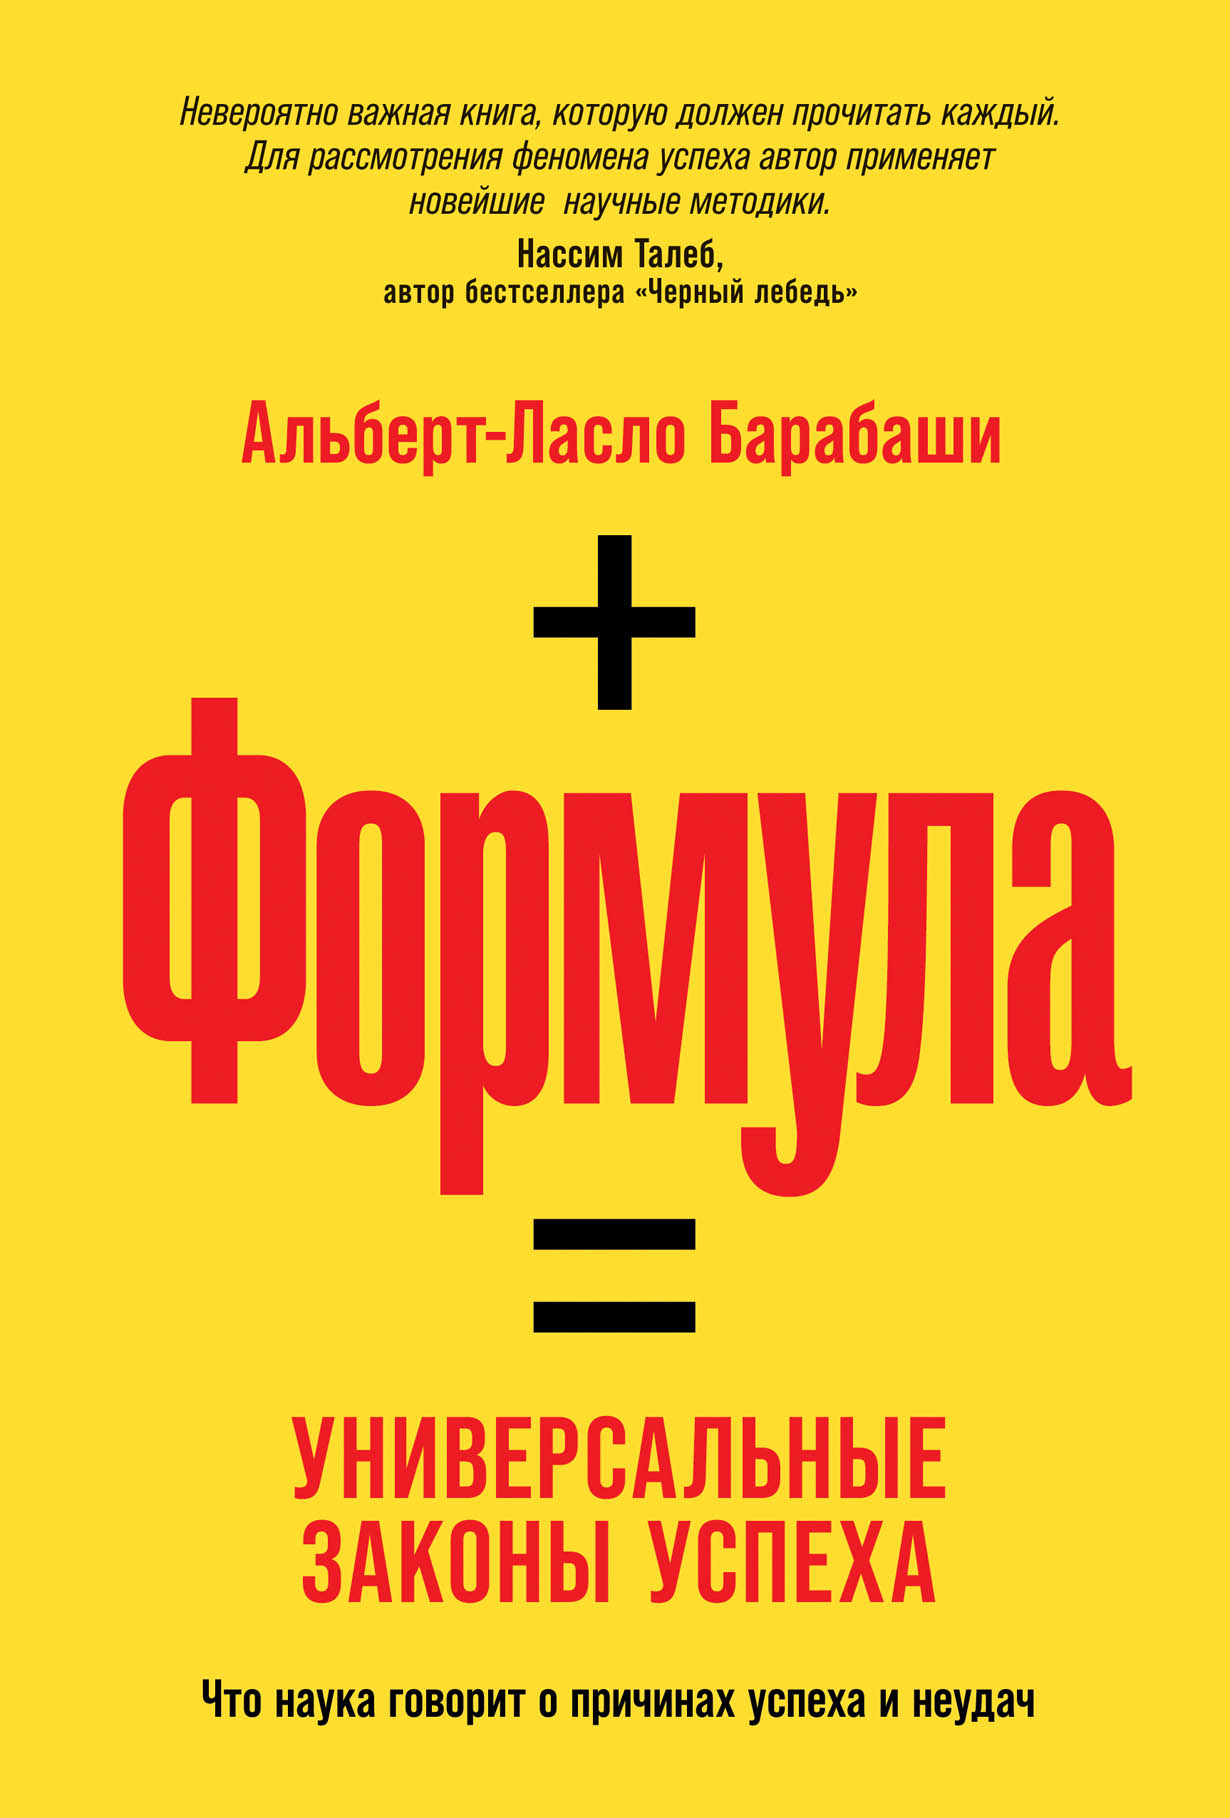 Формула: Универсальные законы успеха — купить книгу Альберта-Ласло Барабаши  на сайте alpinabook.ru